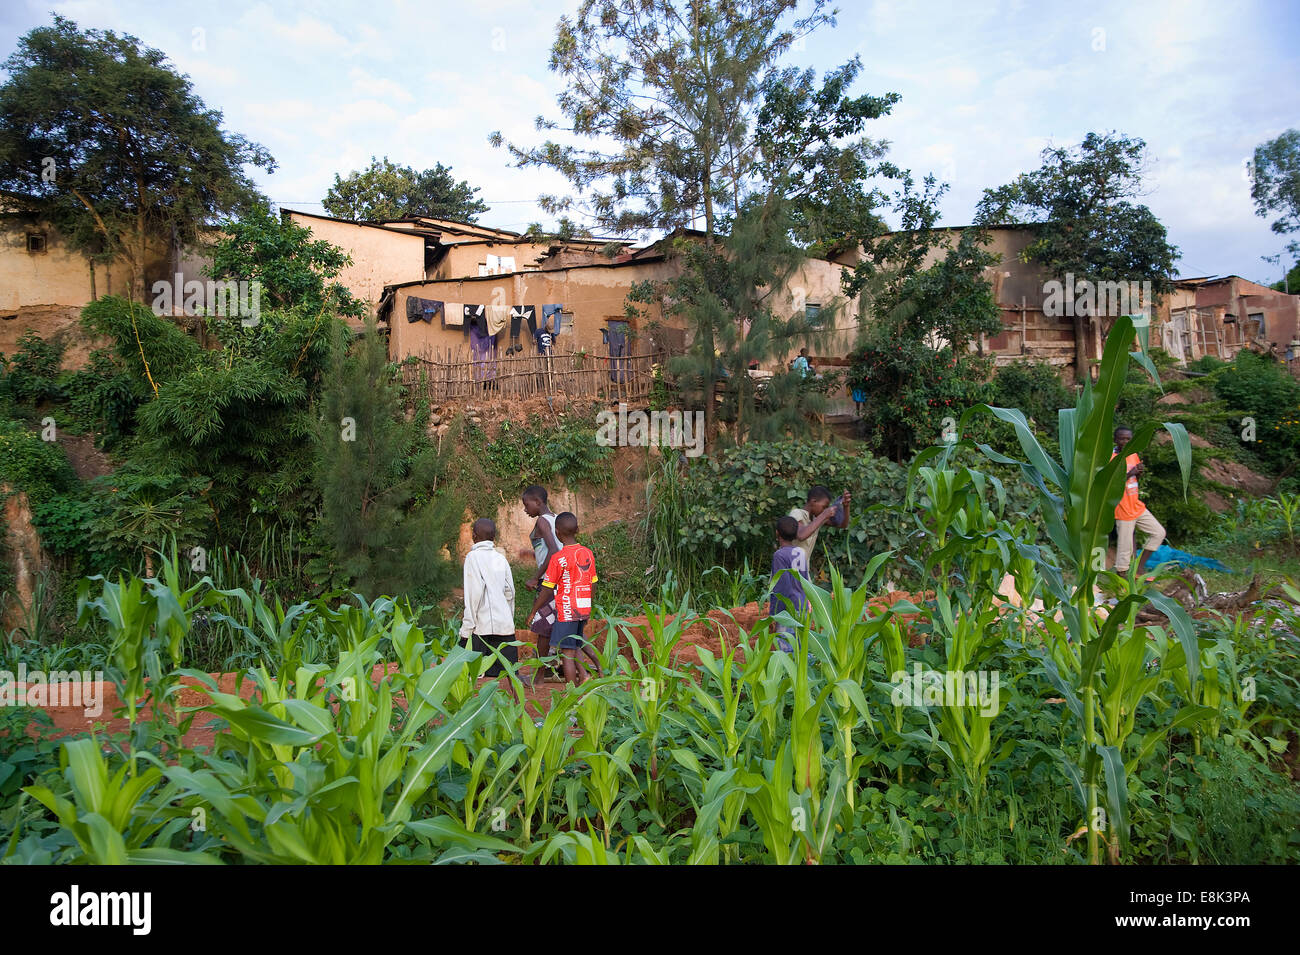 Ruanda, KIGALI: Kigali ist eine sehr grüne hügelige Stadt mit einfachen Schlamm und Steinhäuser. Stockfoto